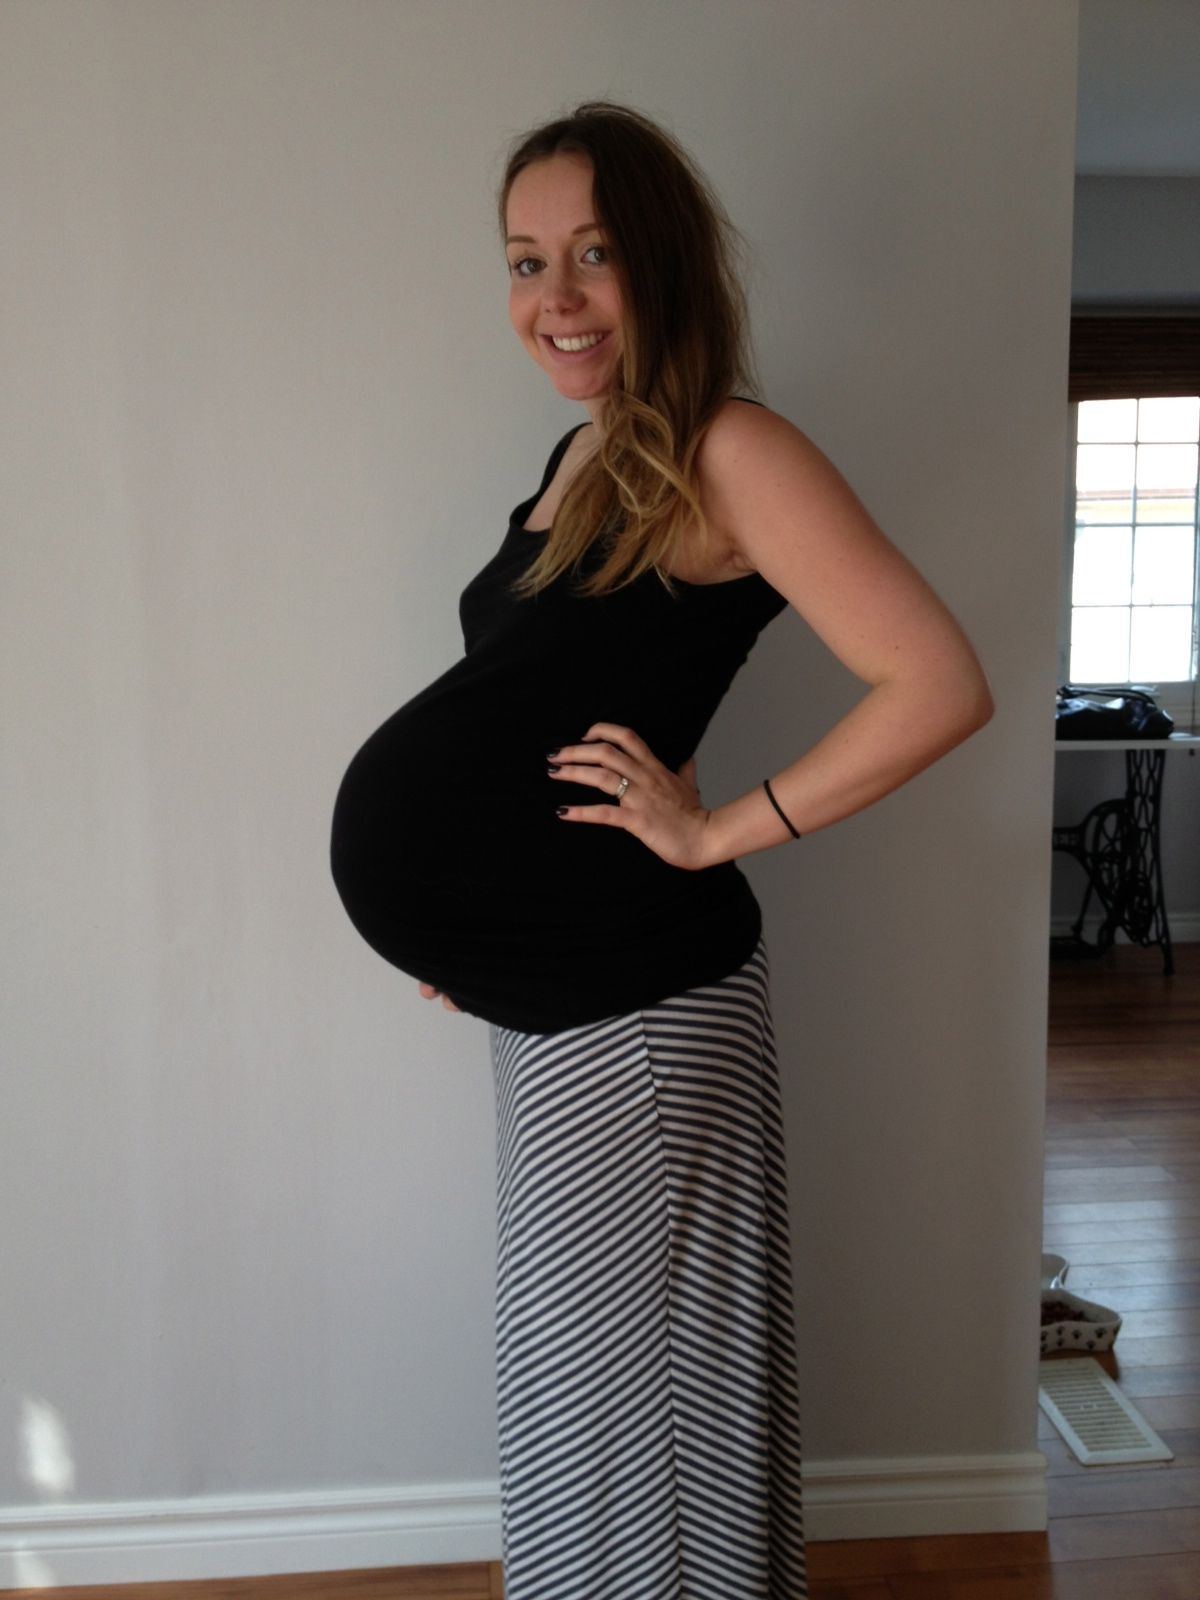 Vi-Vi reccomend Amateur lady picture pregnant